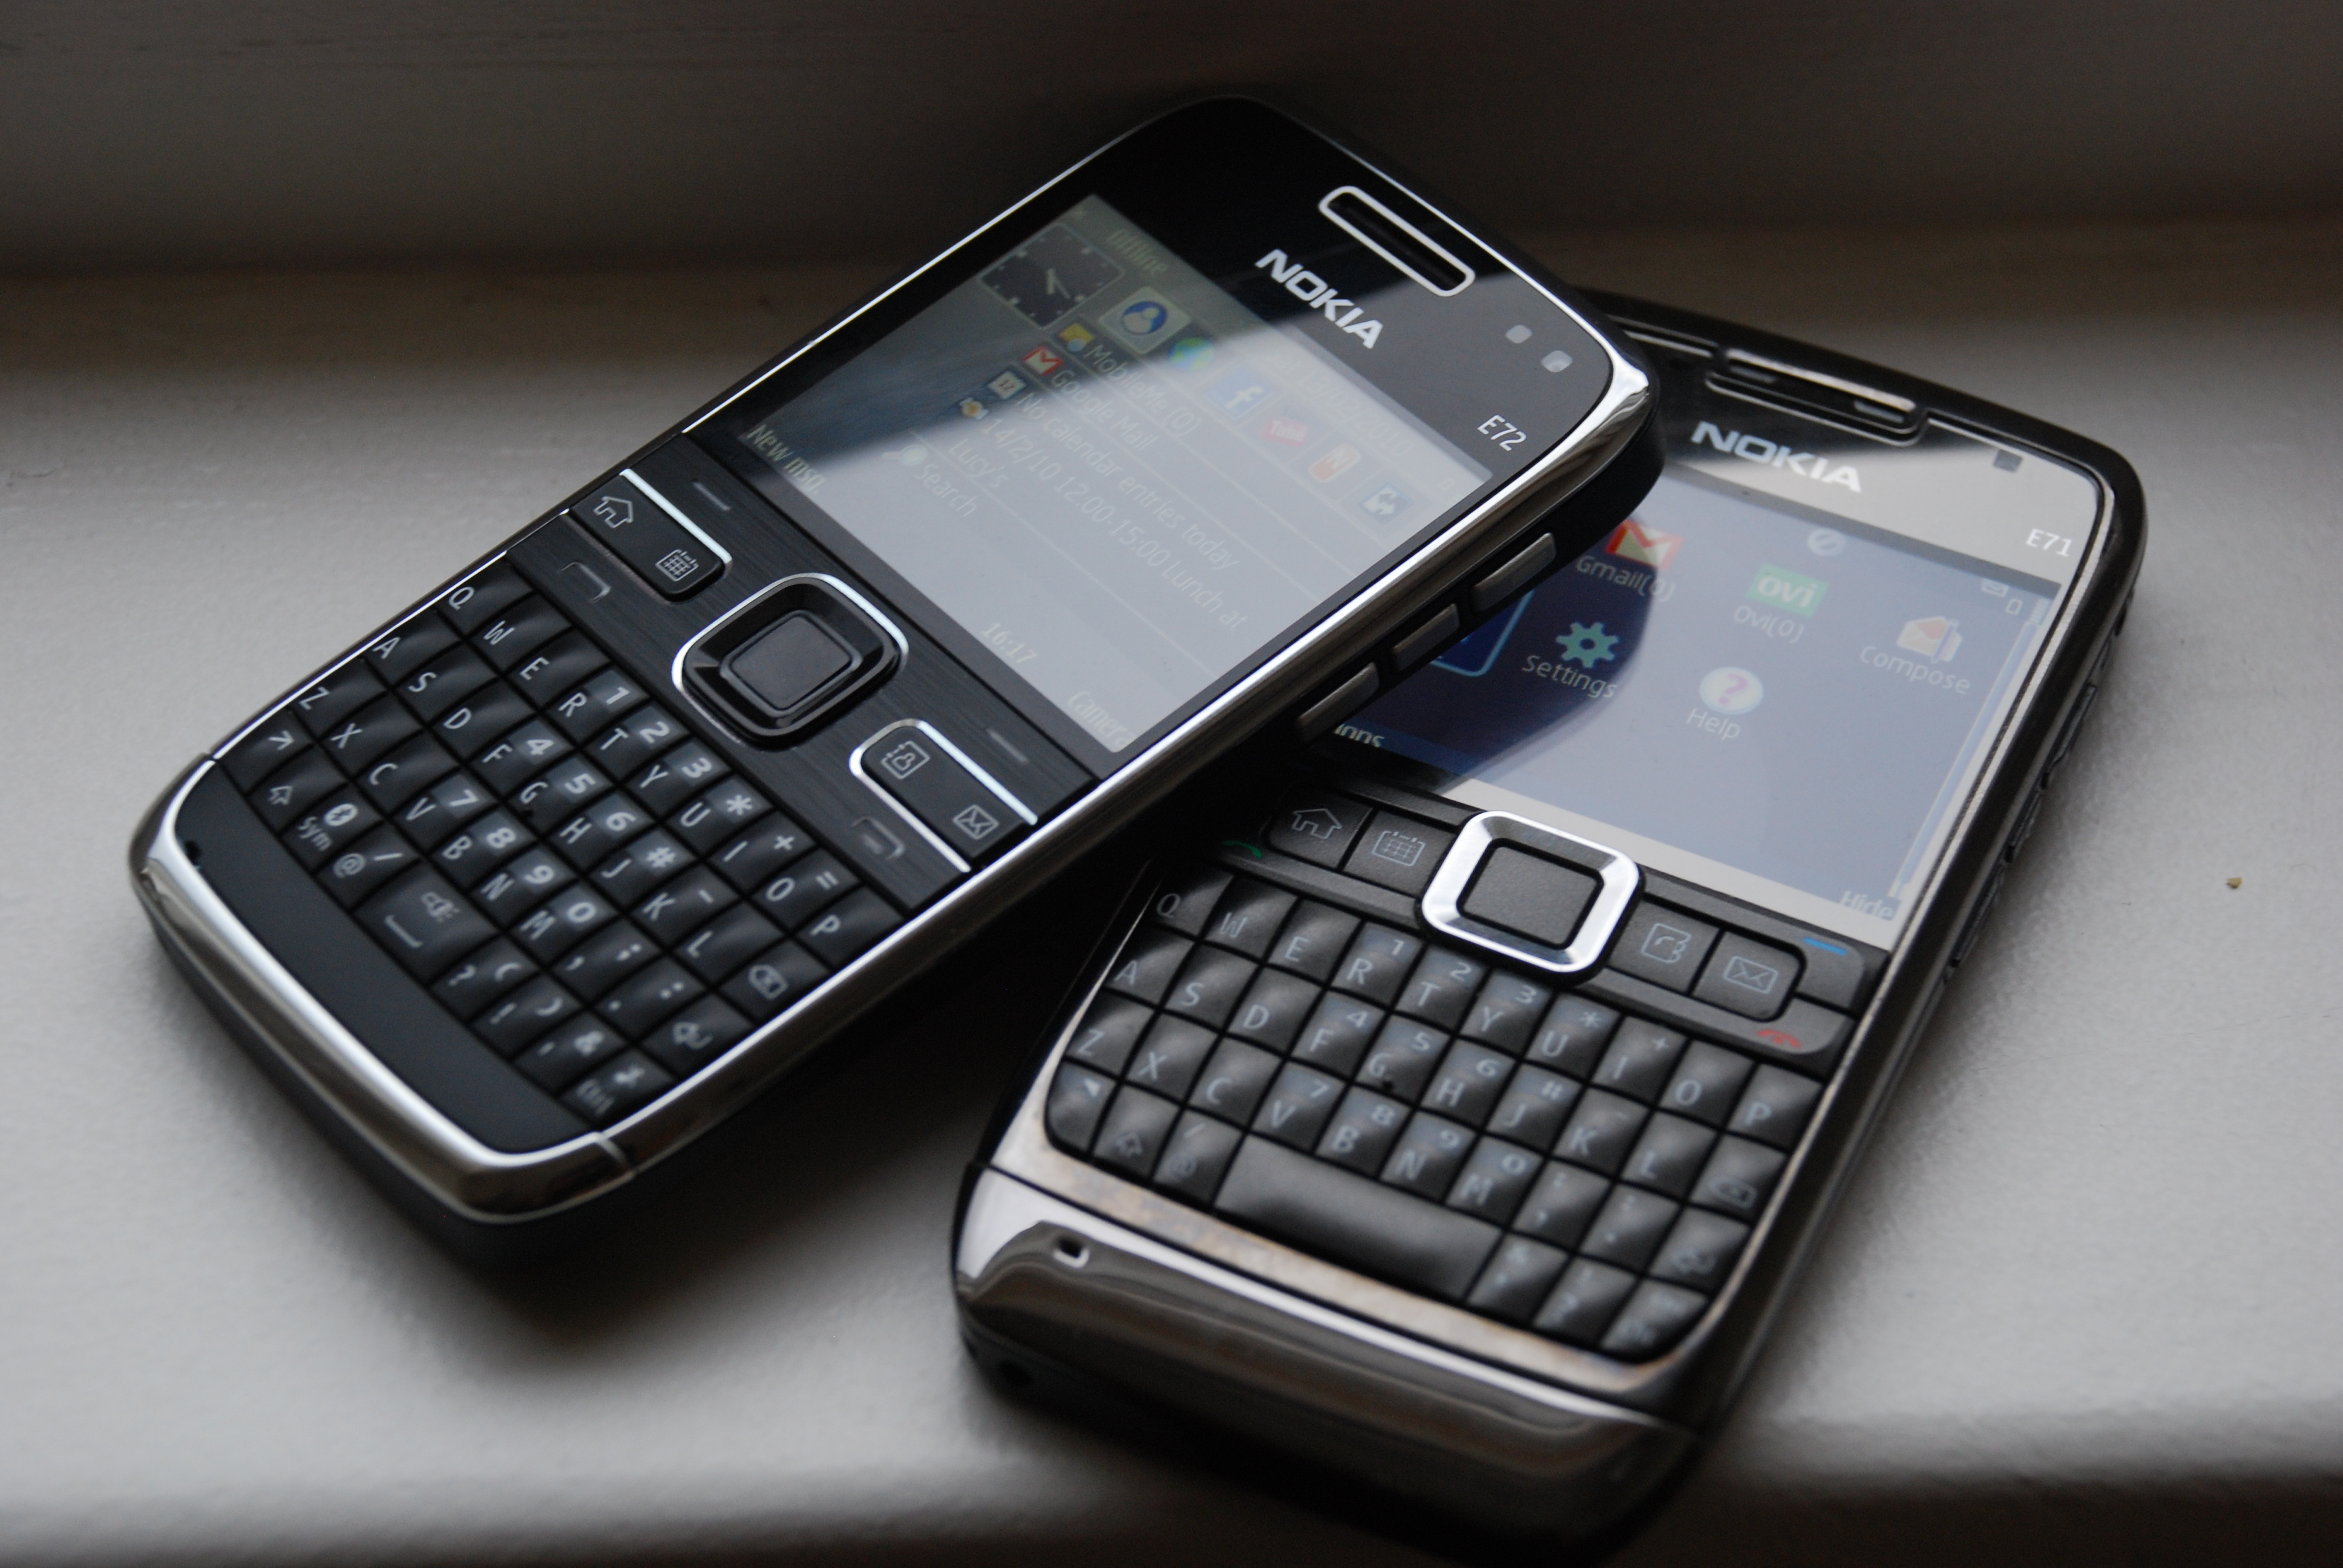 Với số lượng lớn các hình nền Nokia đẹp và độc đáo, bạn sẽ không thể bỏ qua cơ hội để trang trí điện thoại của mình với những hình nền tuyệt vời này. Hình nền Nokia sẽ giúp cho điện thoại của bạn trở nên đẹp hơn và cá tính hơn.